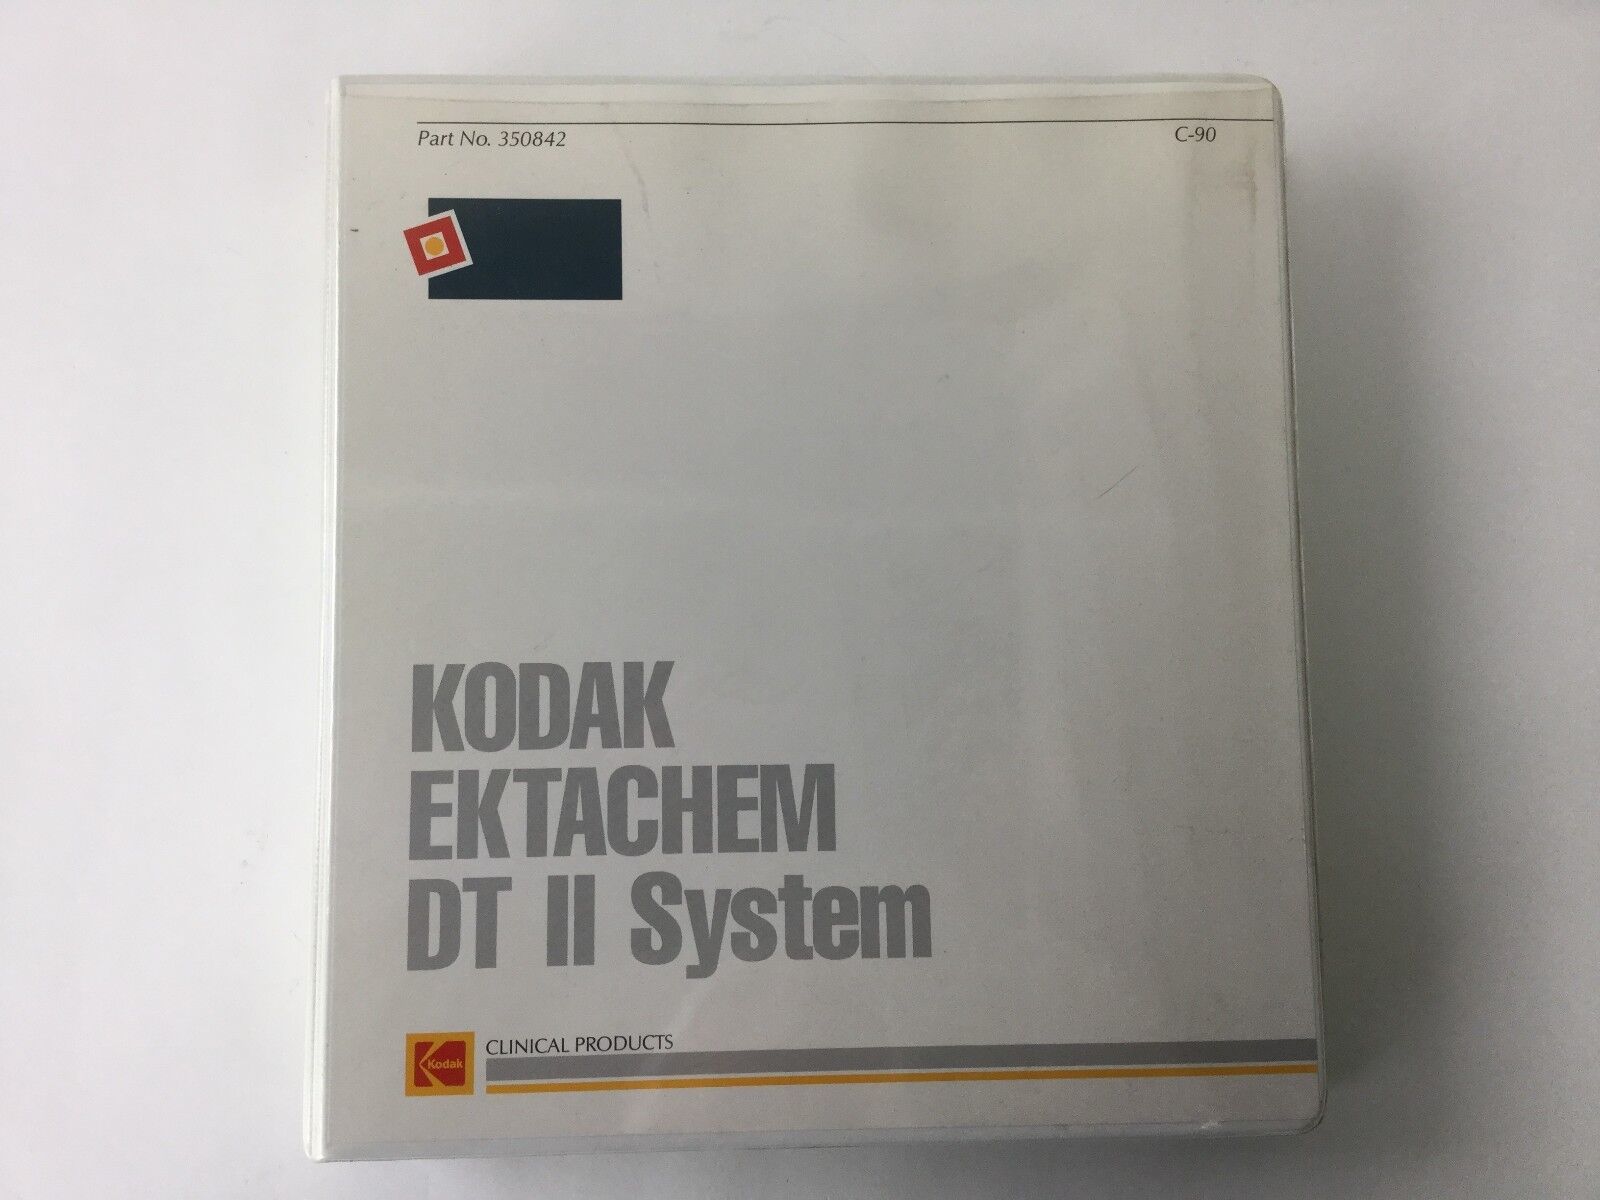 KODAK EKTACHEM DT II Operator's Manual (Binder) C 90